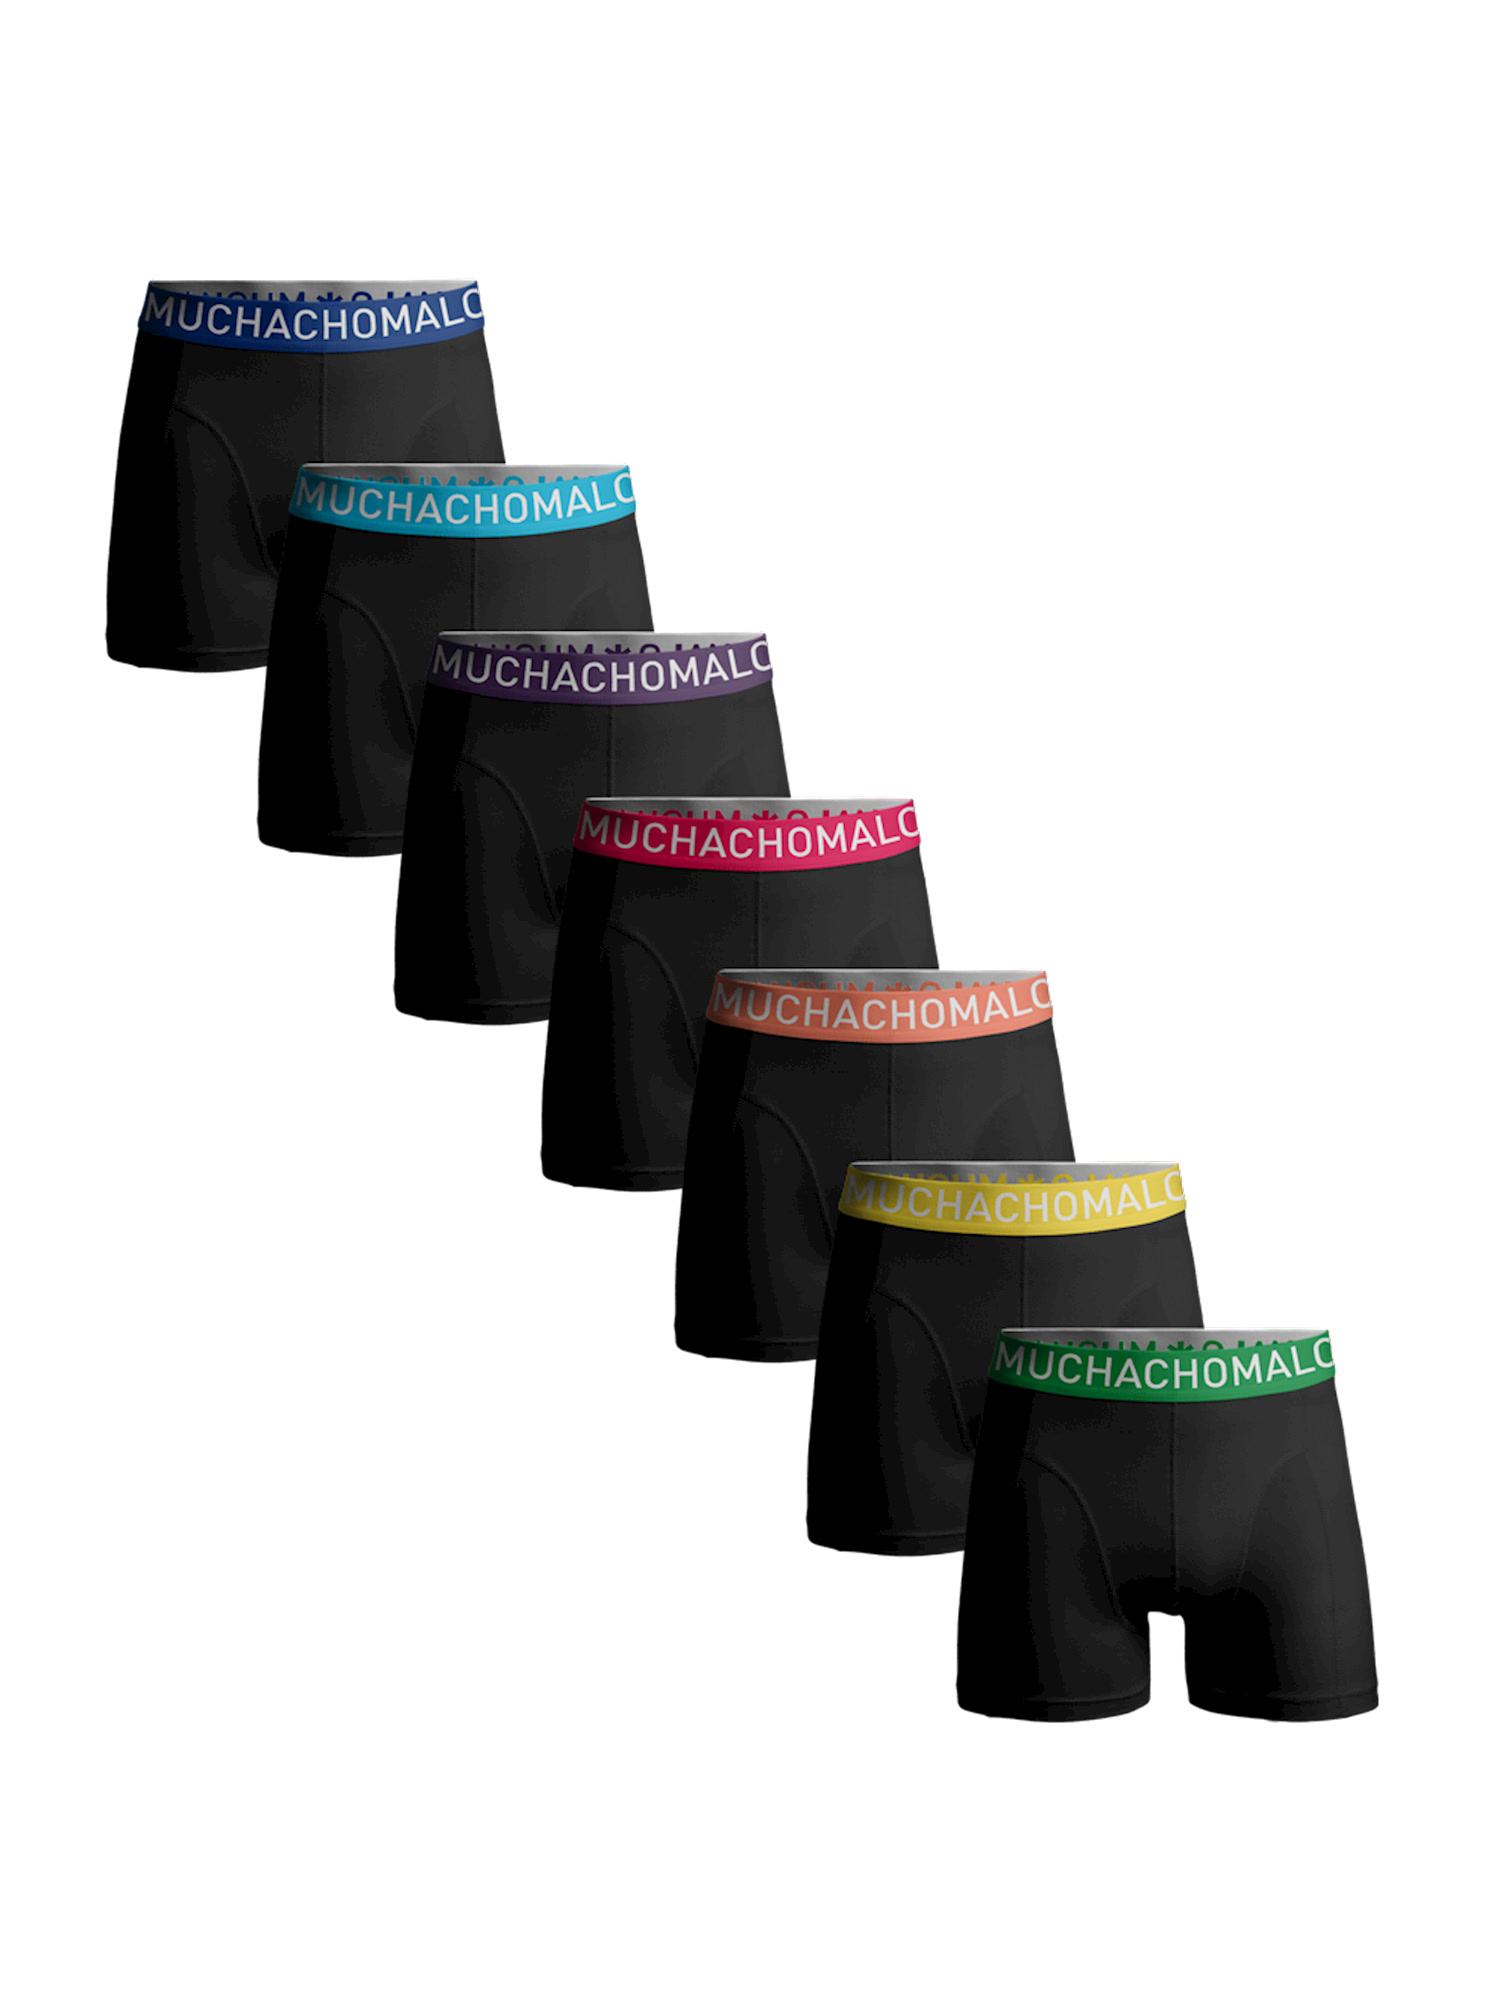 Боксеры Muchachomalo 7er-Set: Boxershorts, цвет Black/Black/Black/Black/Black/Black/Black фото